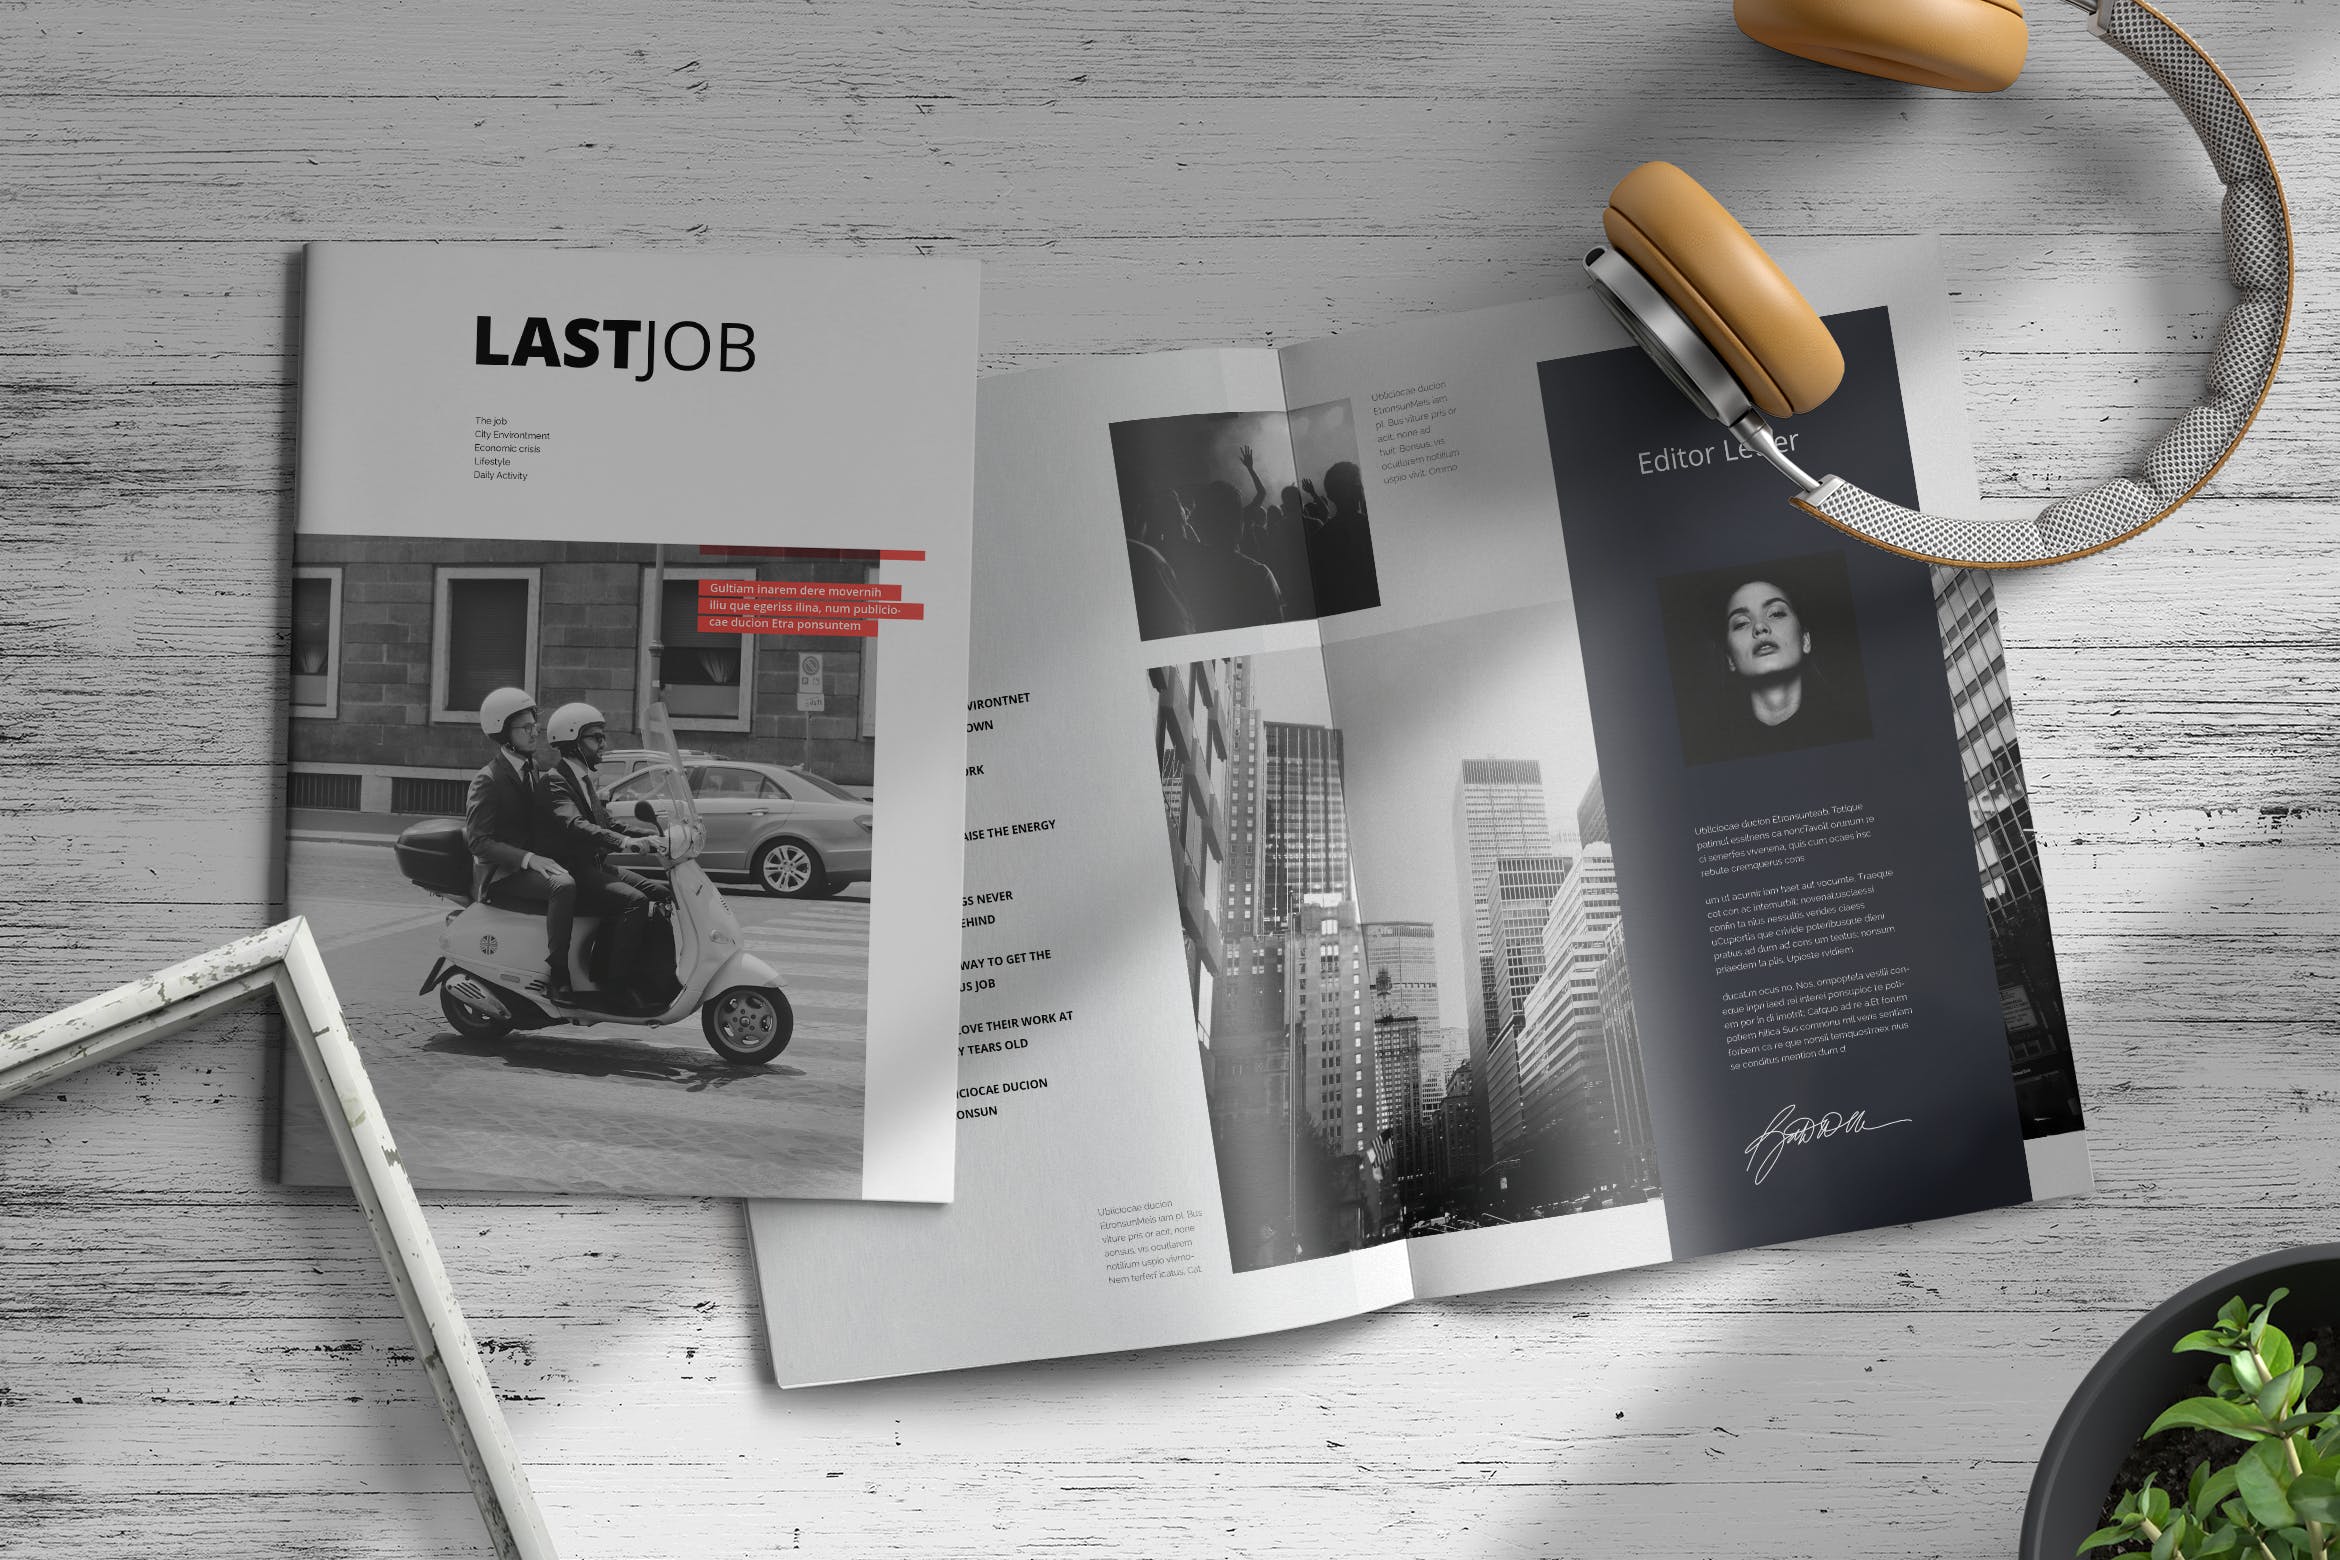 职场/人力资源主题第一素材精选杂志排版设计模板 Lastjob | Magazine Template插图